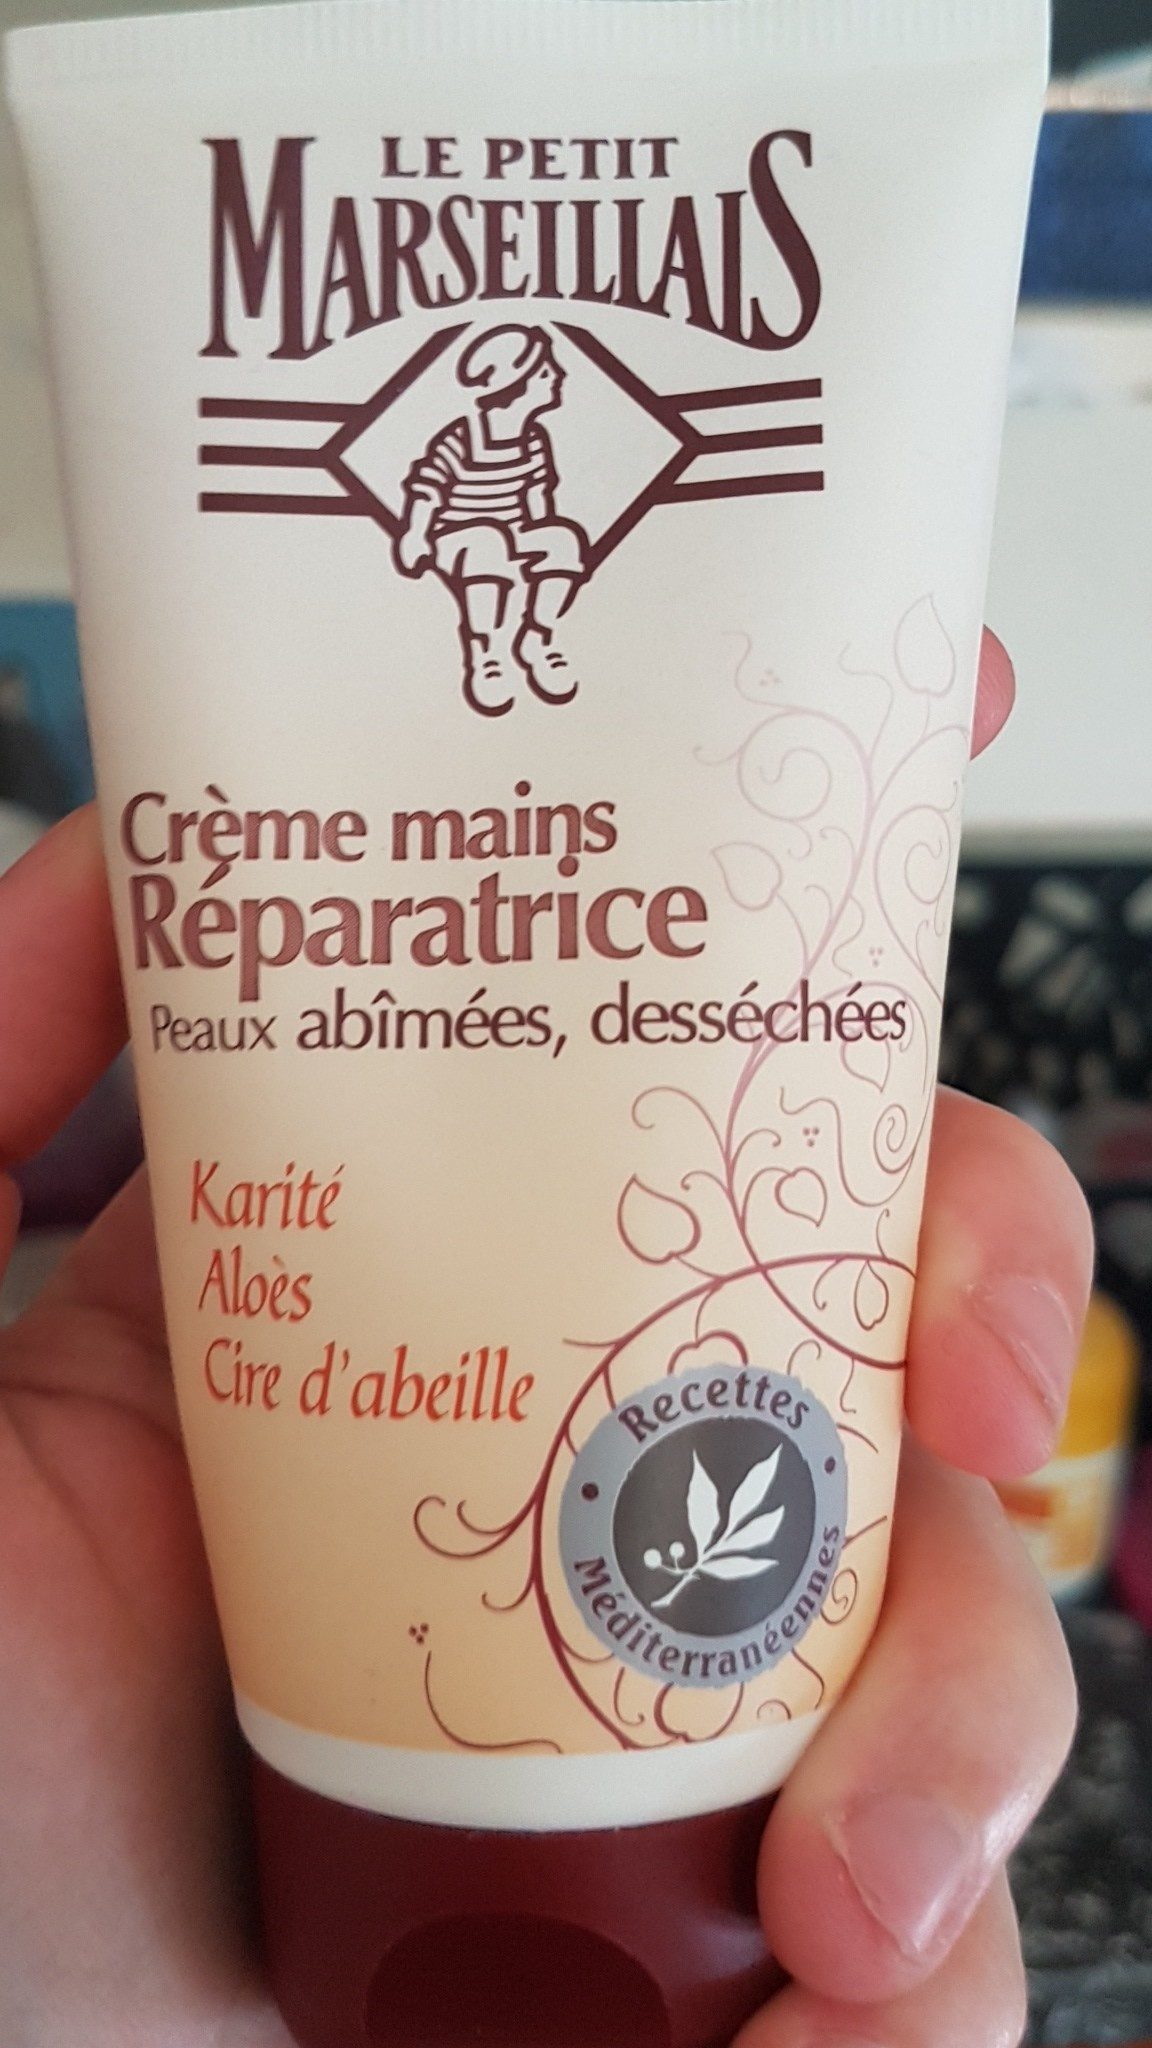 Crème mains réparatrice - Product - fr